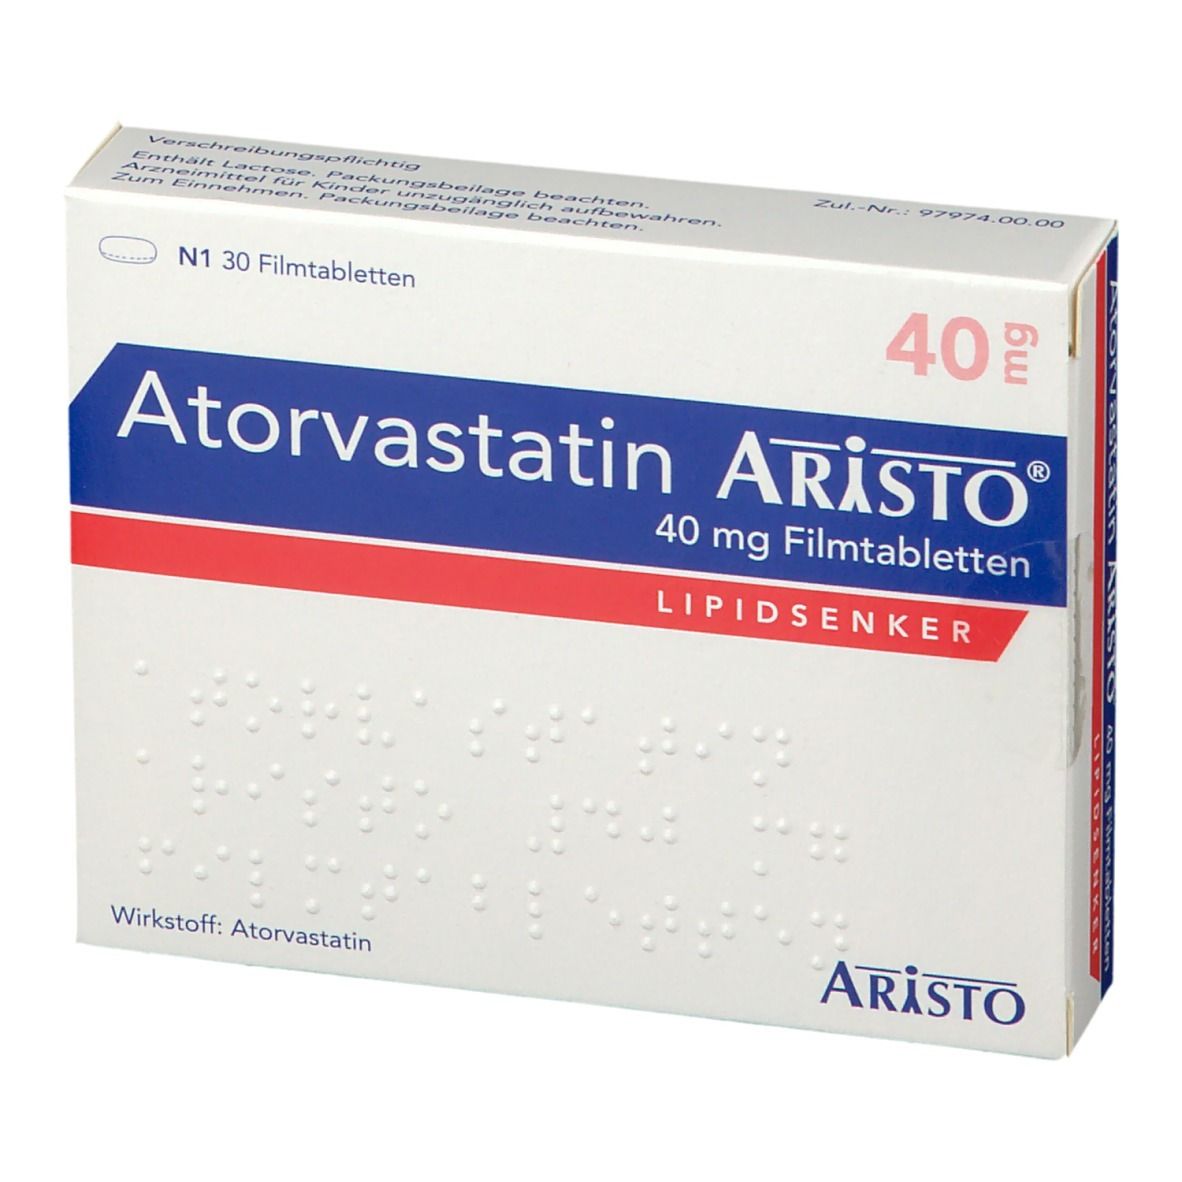 Atorvastatin Aristo® 40 mg